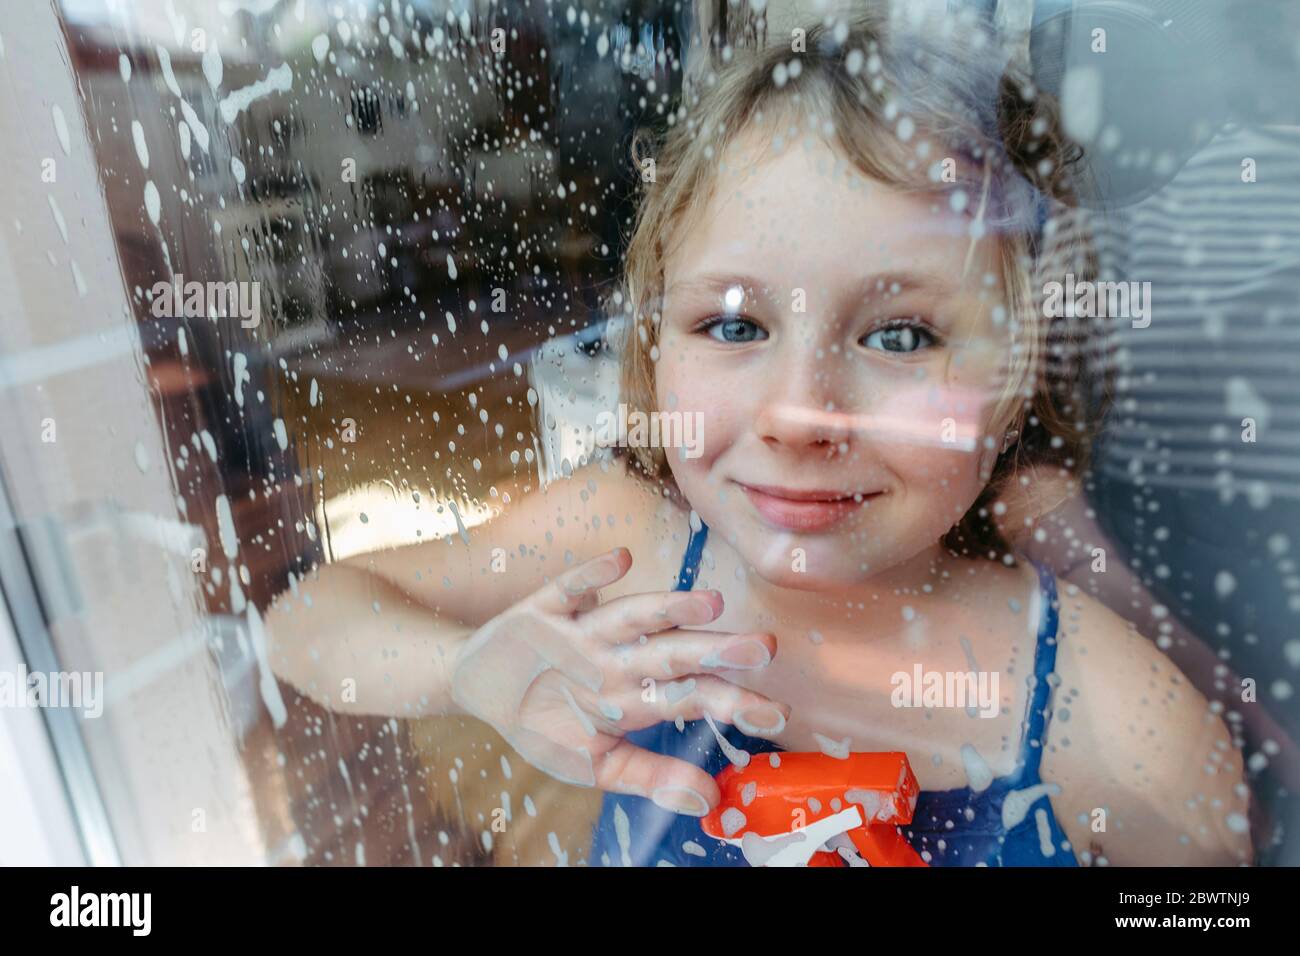 Ritratto di bionda sorridente con flacone spray che guarda attraverso la finestra bagnata Foto Stock